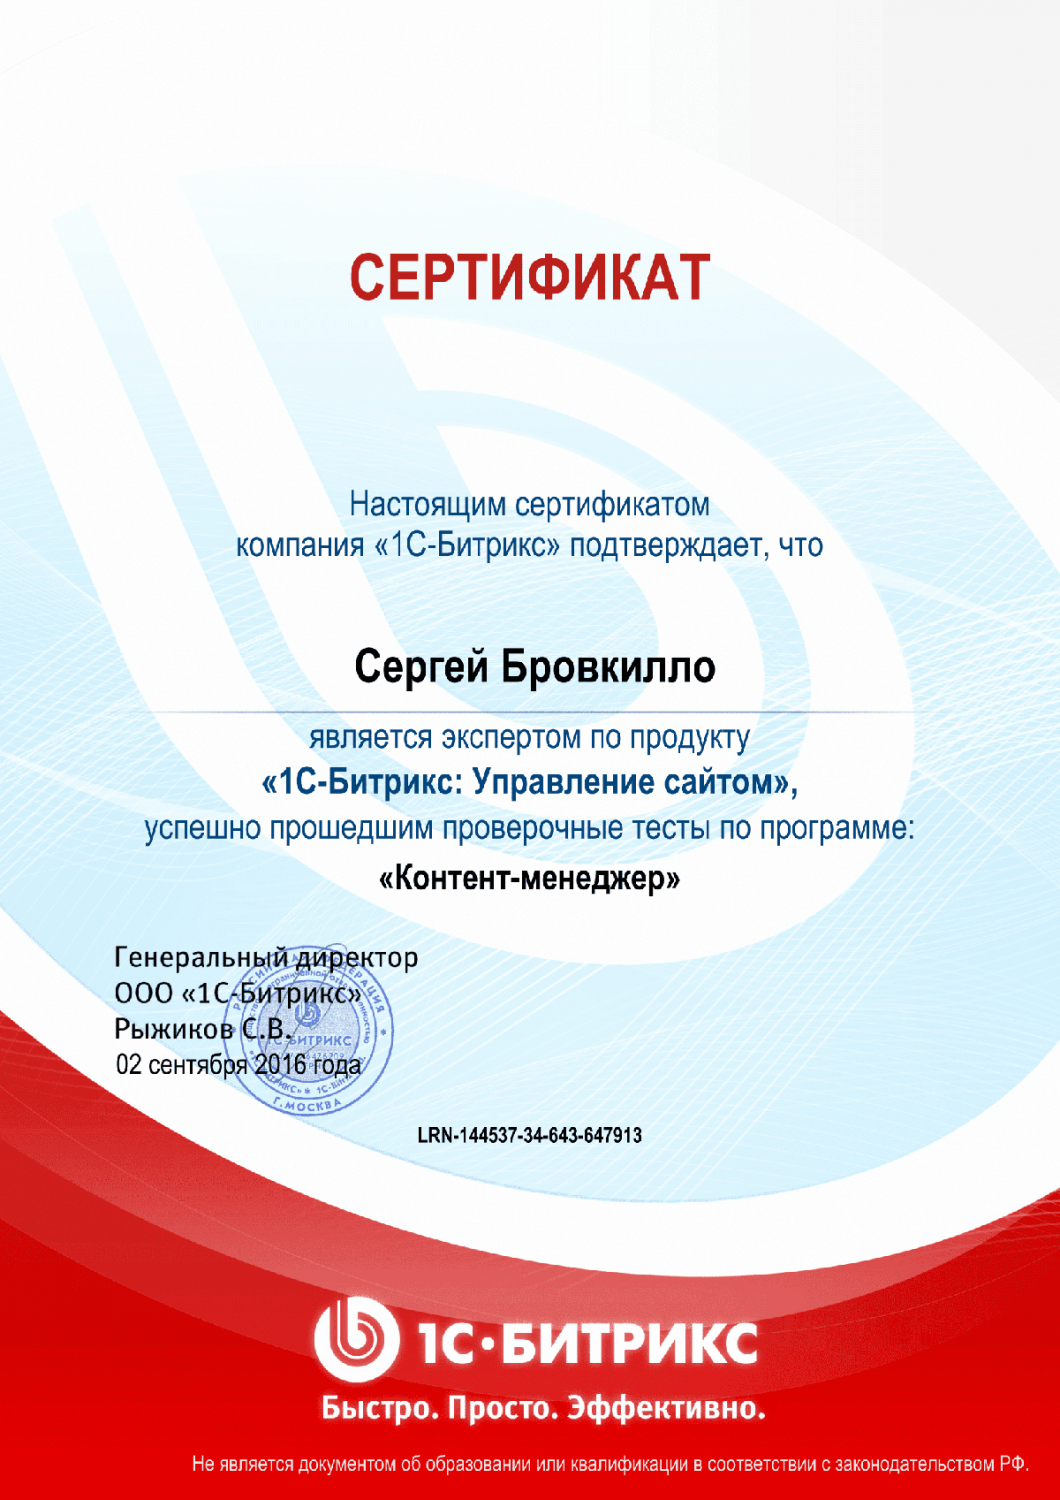 Сертификат эксперта по программе "Контент-менеджер"" в Москвы